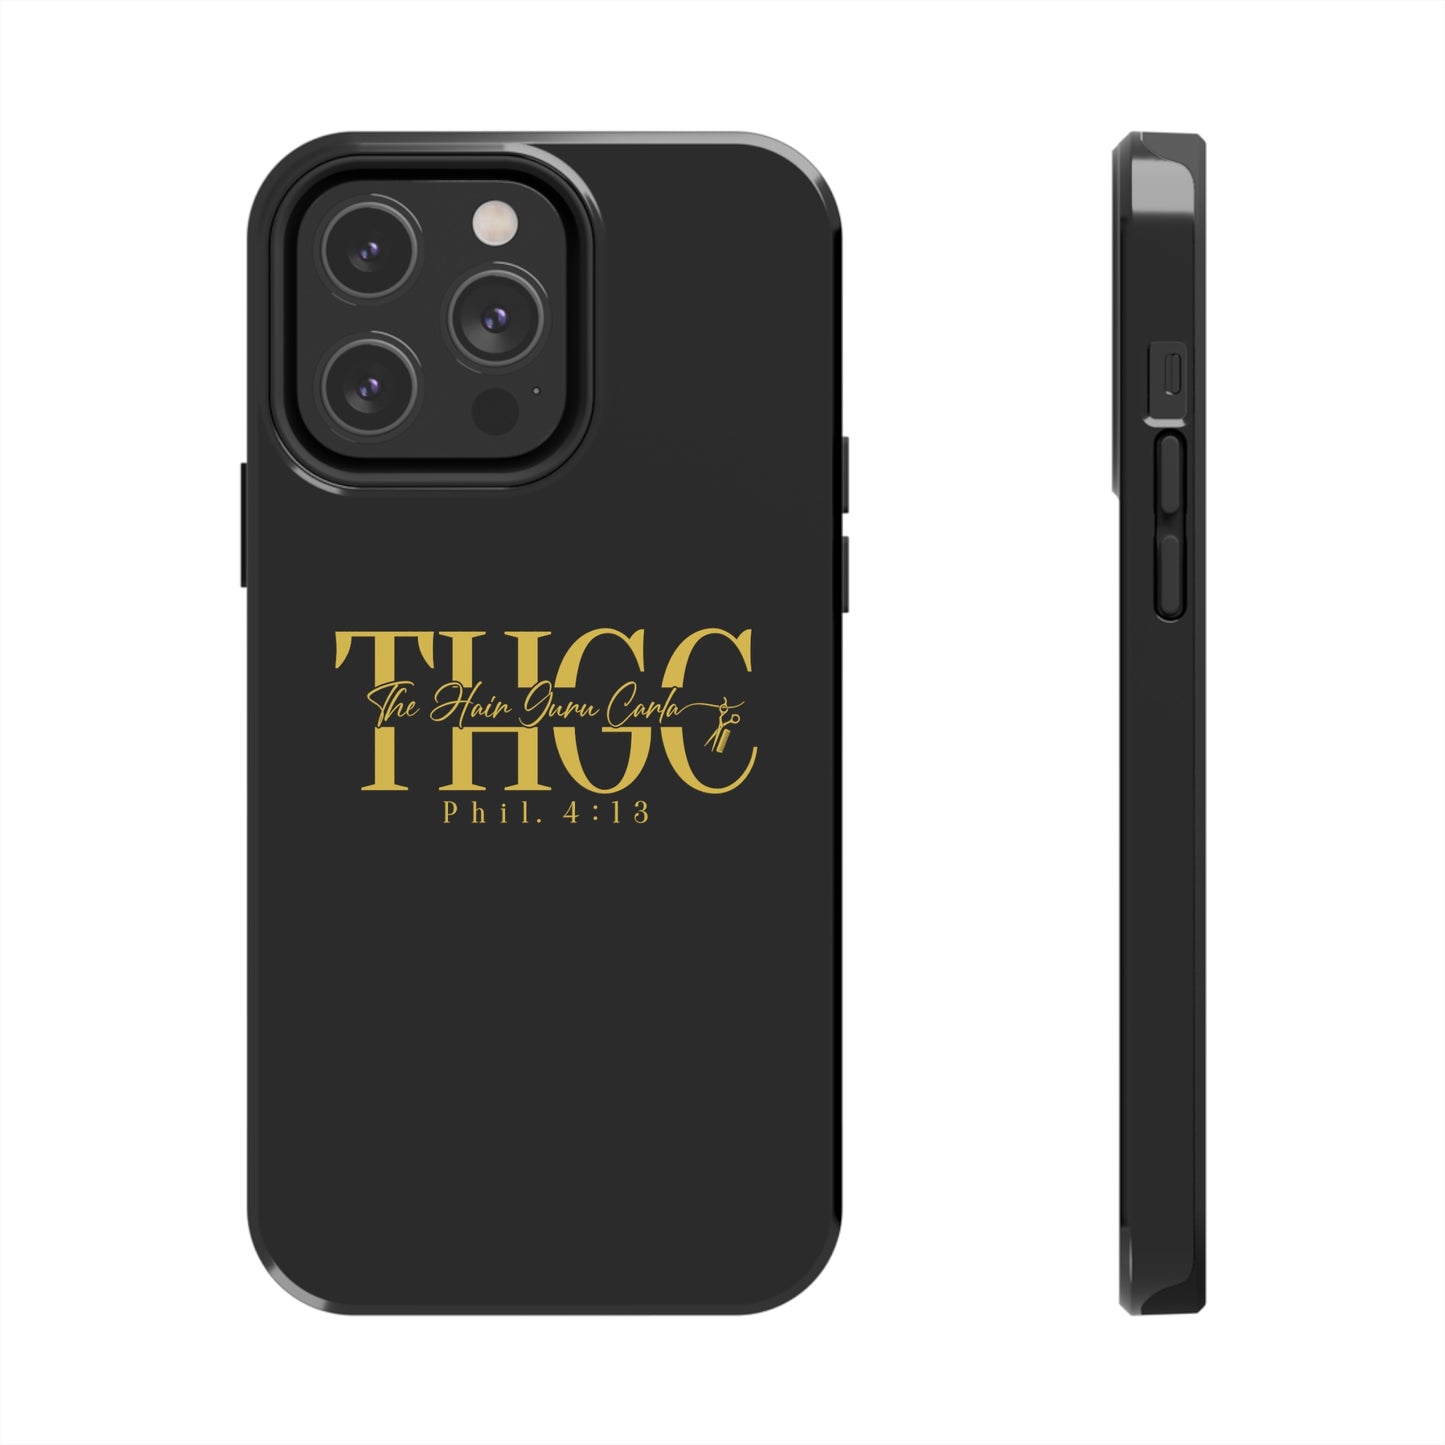 THGC Phone Case